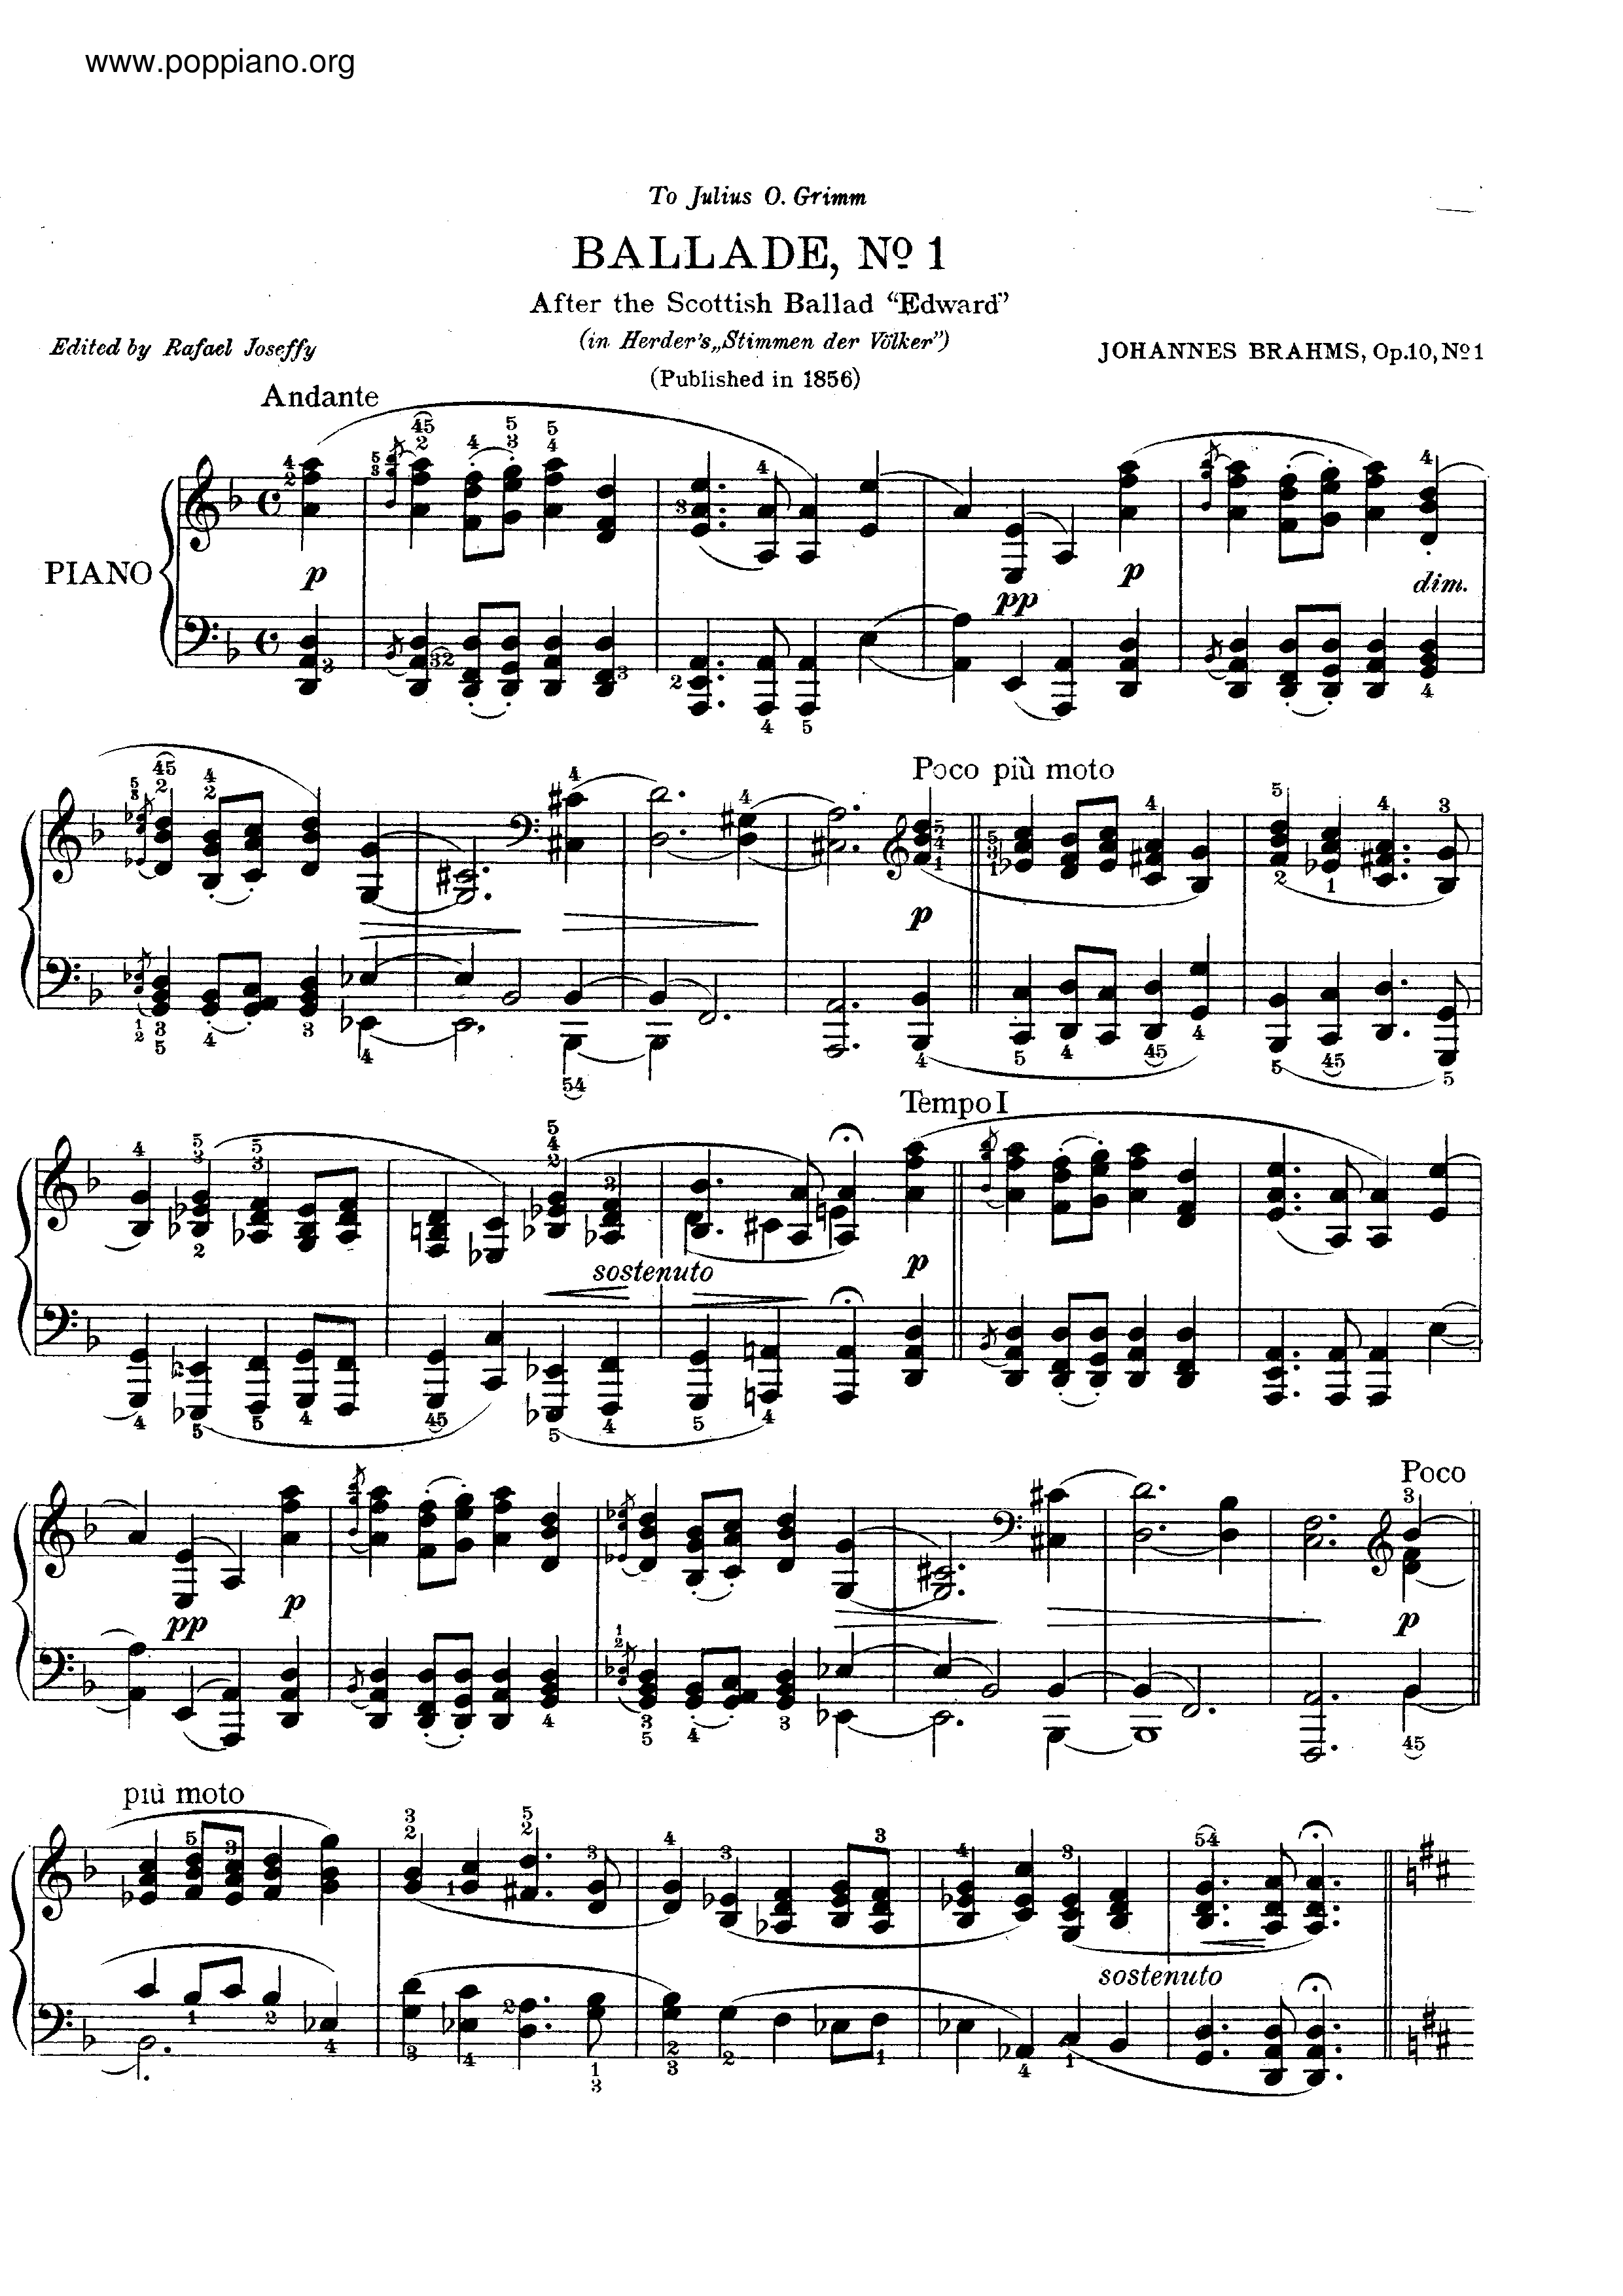 No. 1 in D minor. Andante Score